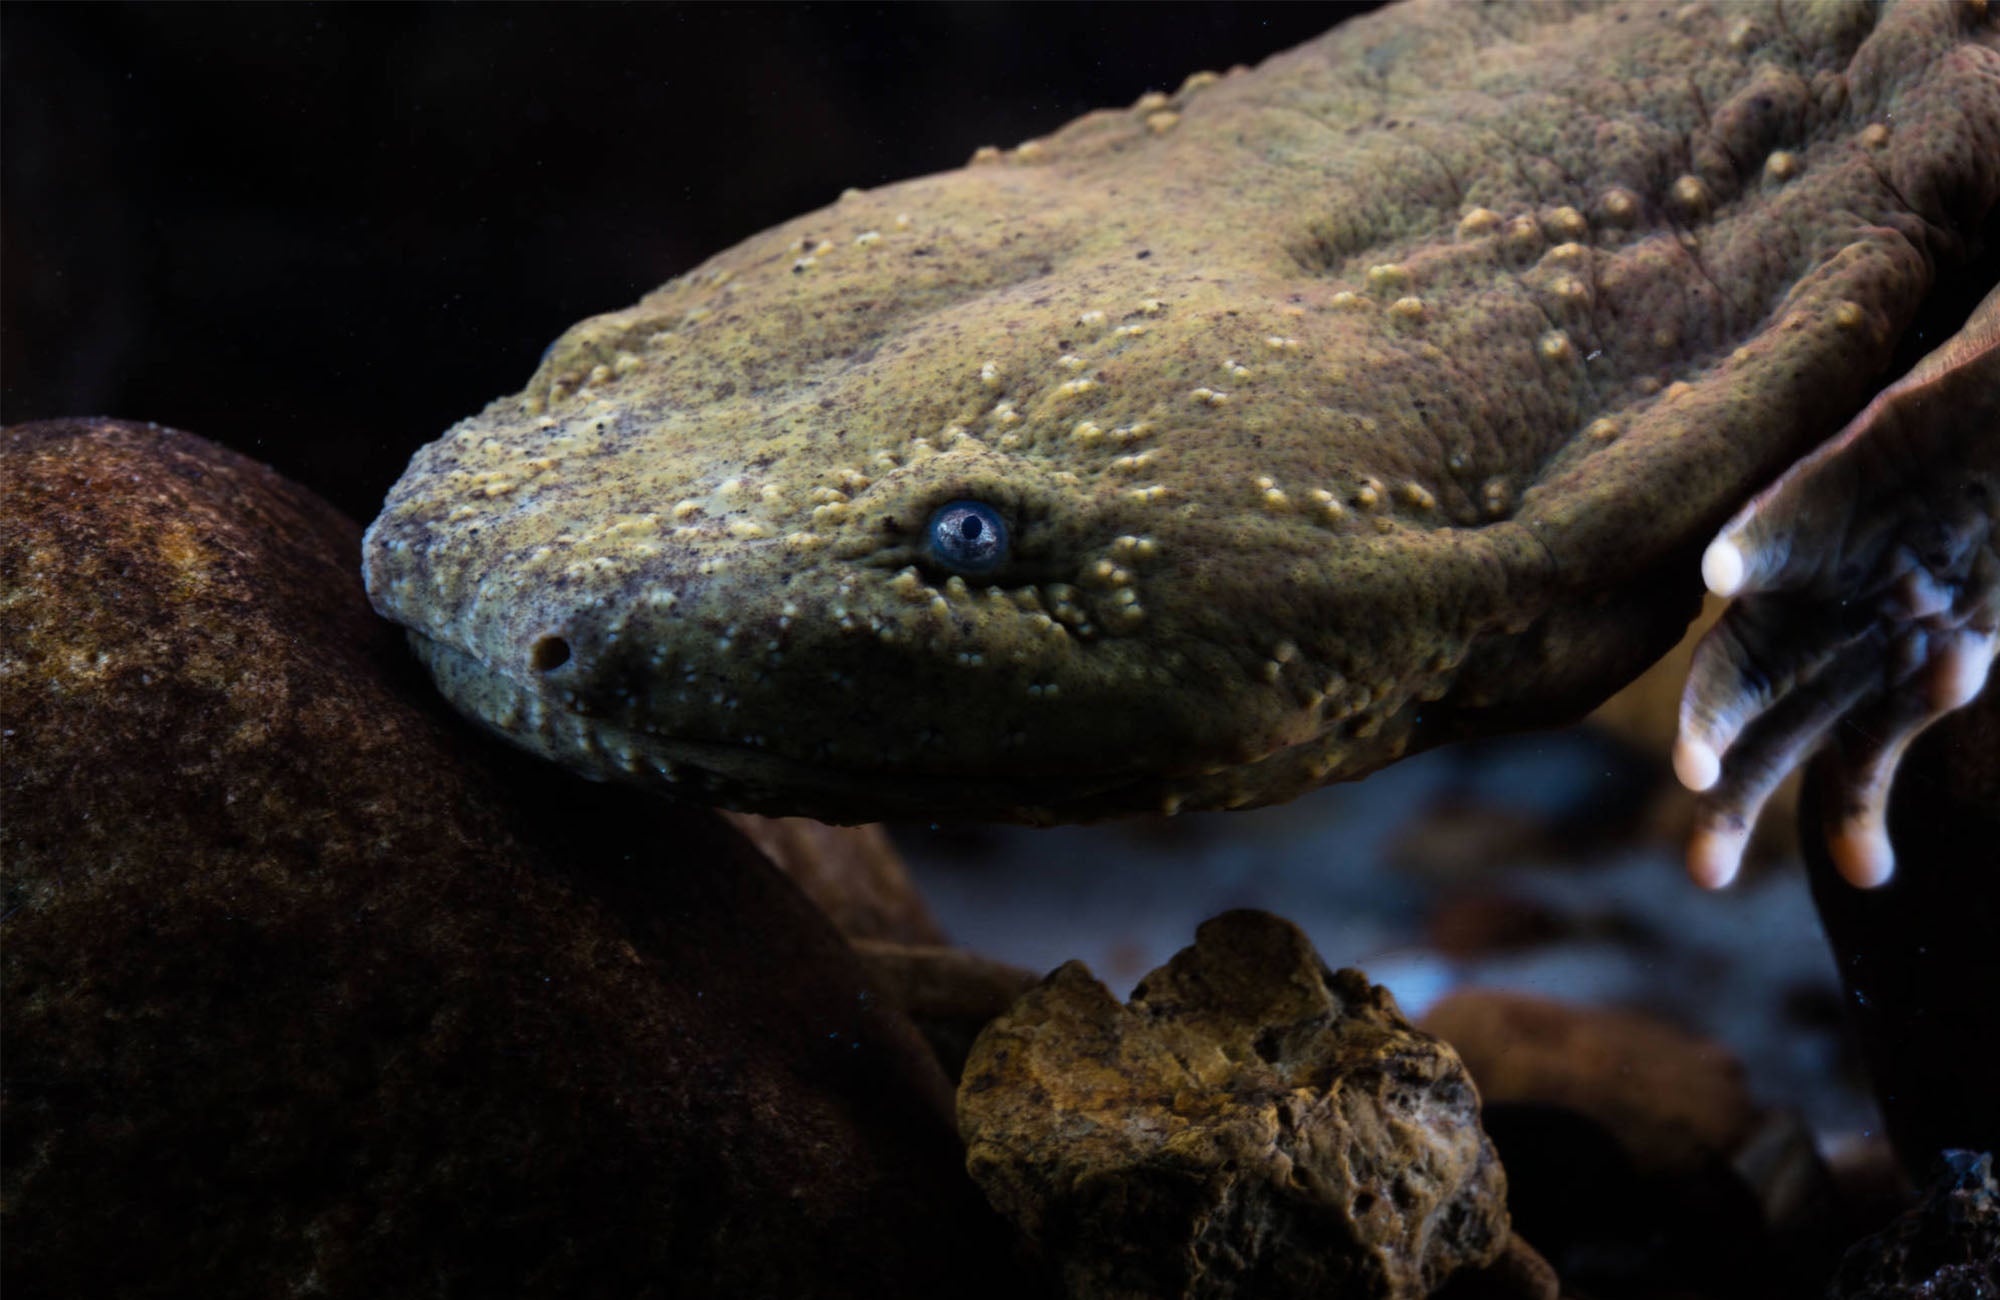 Meet North America's largest salamander, the hellbender